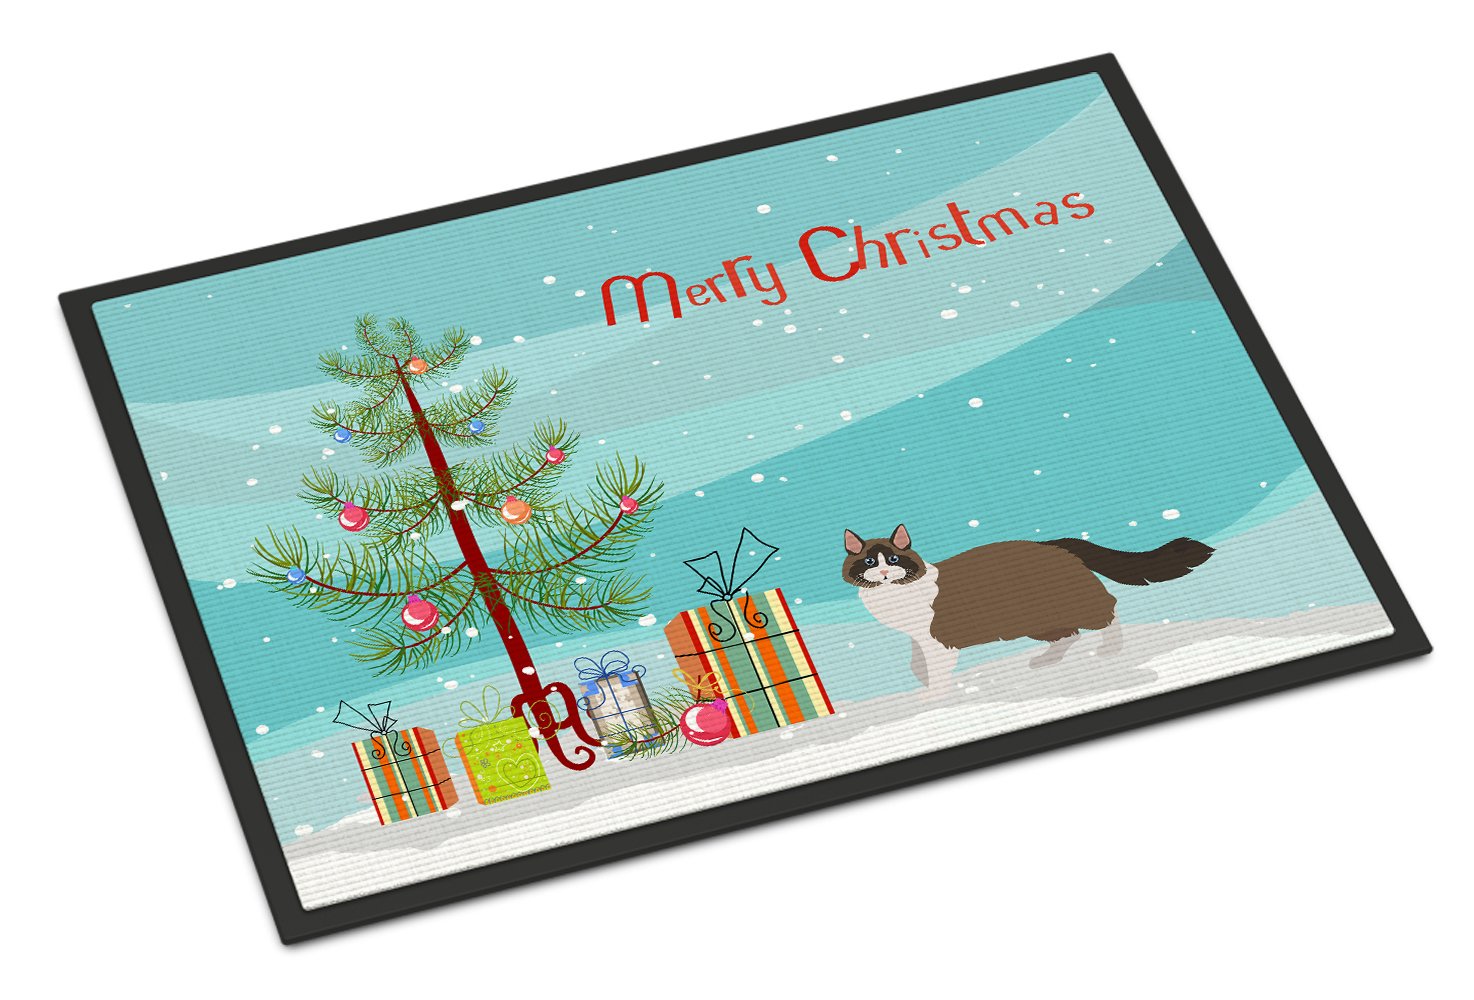 Ragdoll #1 Cat Merry Christmas Indoor or Outdoor Mat 24x36 CK4692JMAT by Caroline's Treasures